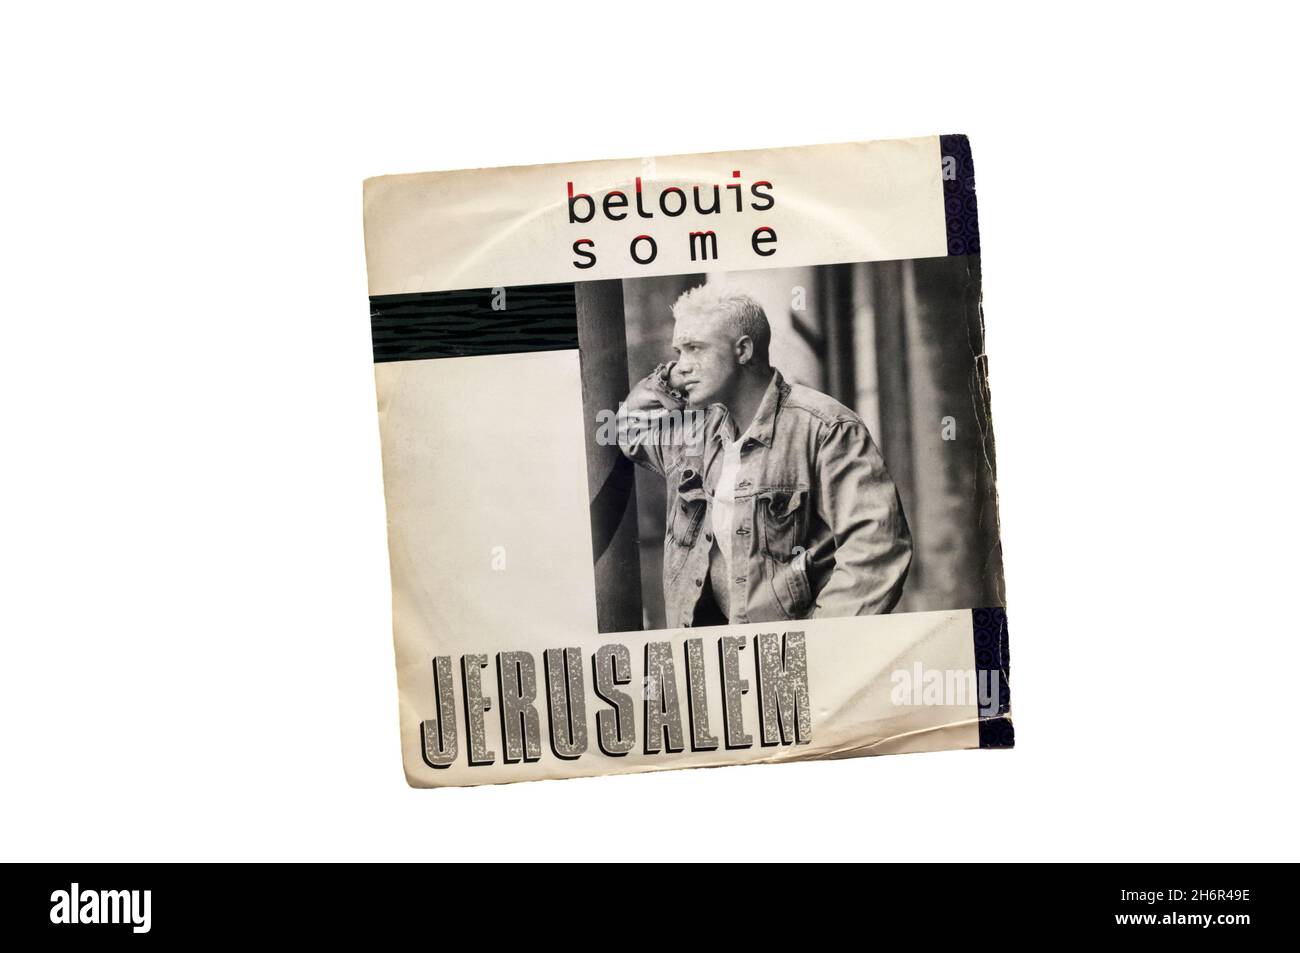 Cuarto y último sencillo del artista británico Belouis some, lanzado en 1986 desde el álbum debut de estudio some people. Foto de stock